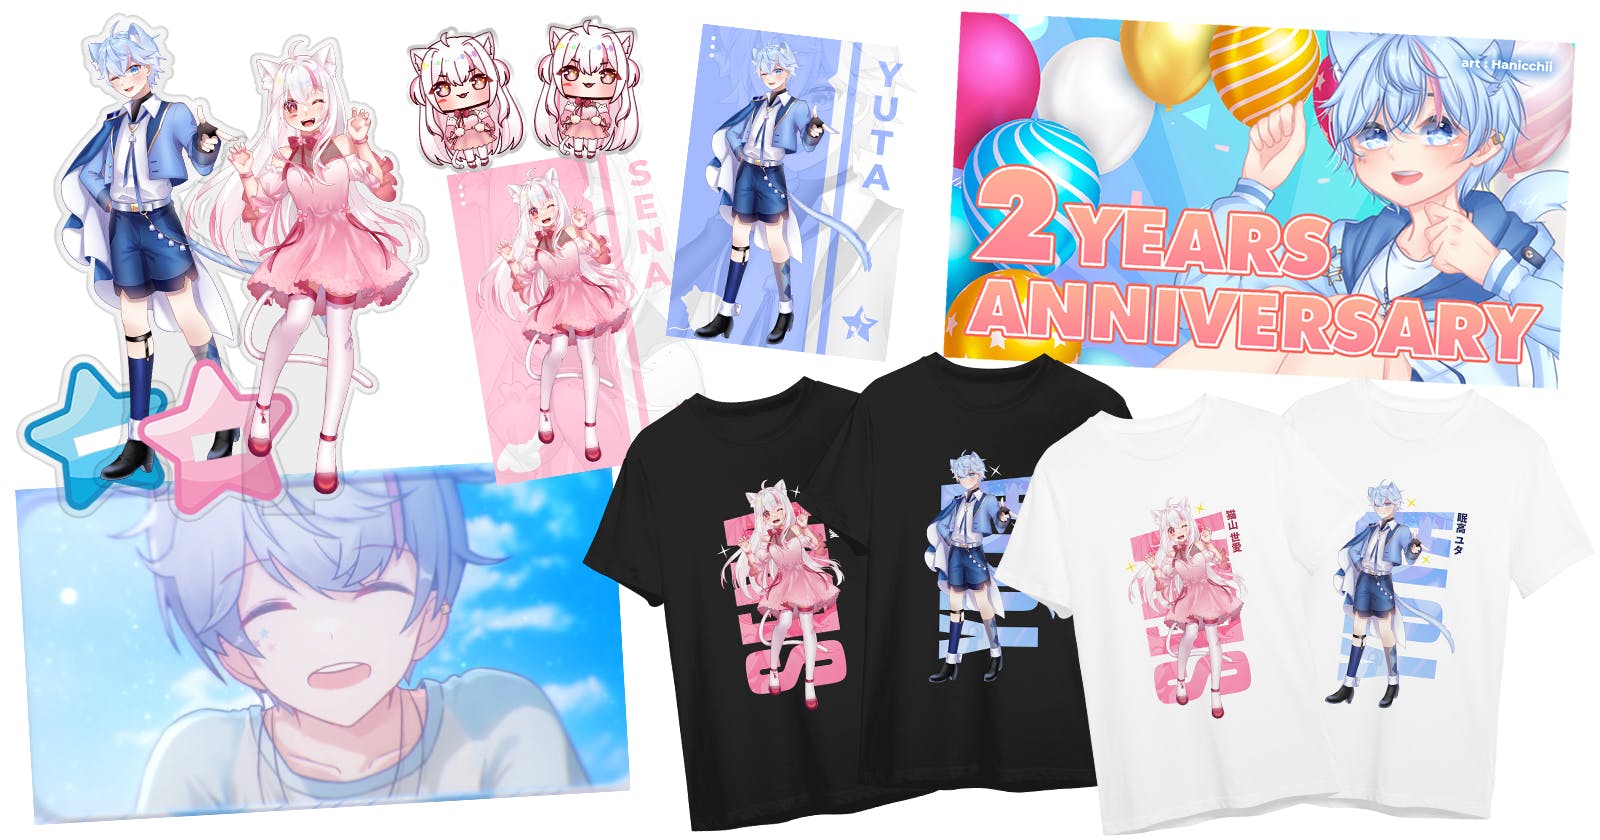 Anniversary Kedua Yuta dan Informasi Merchandise